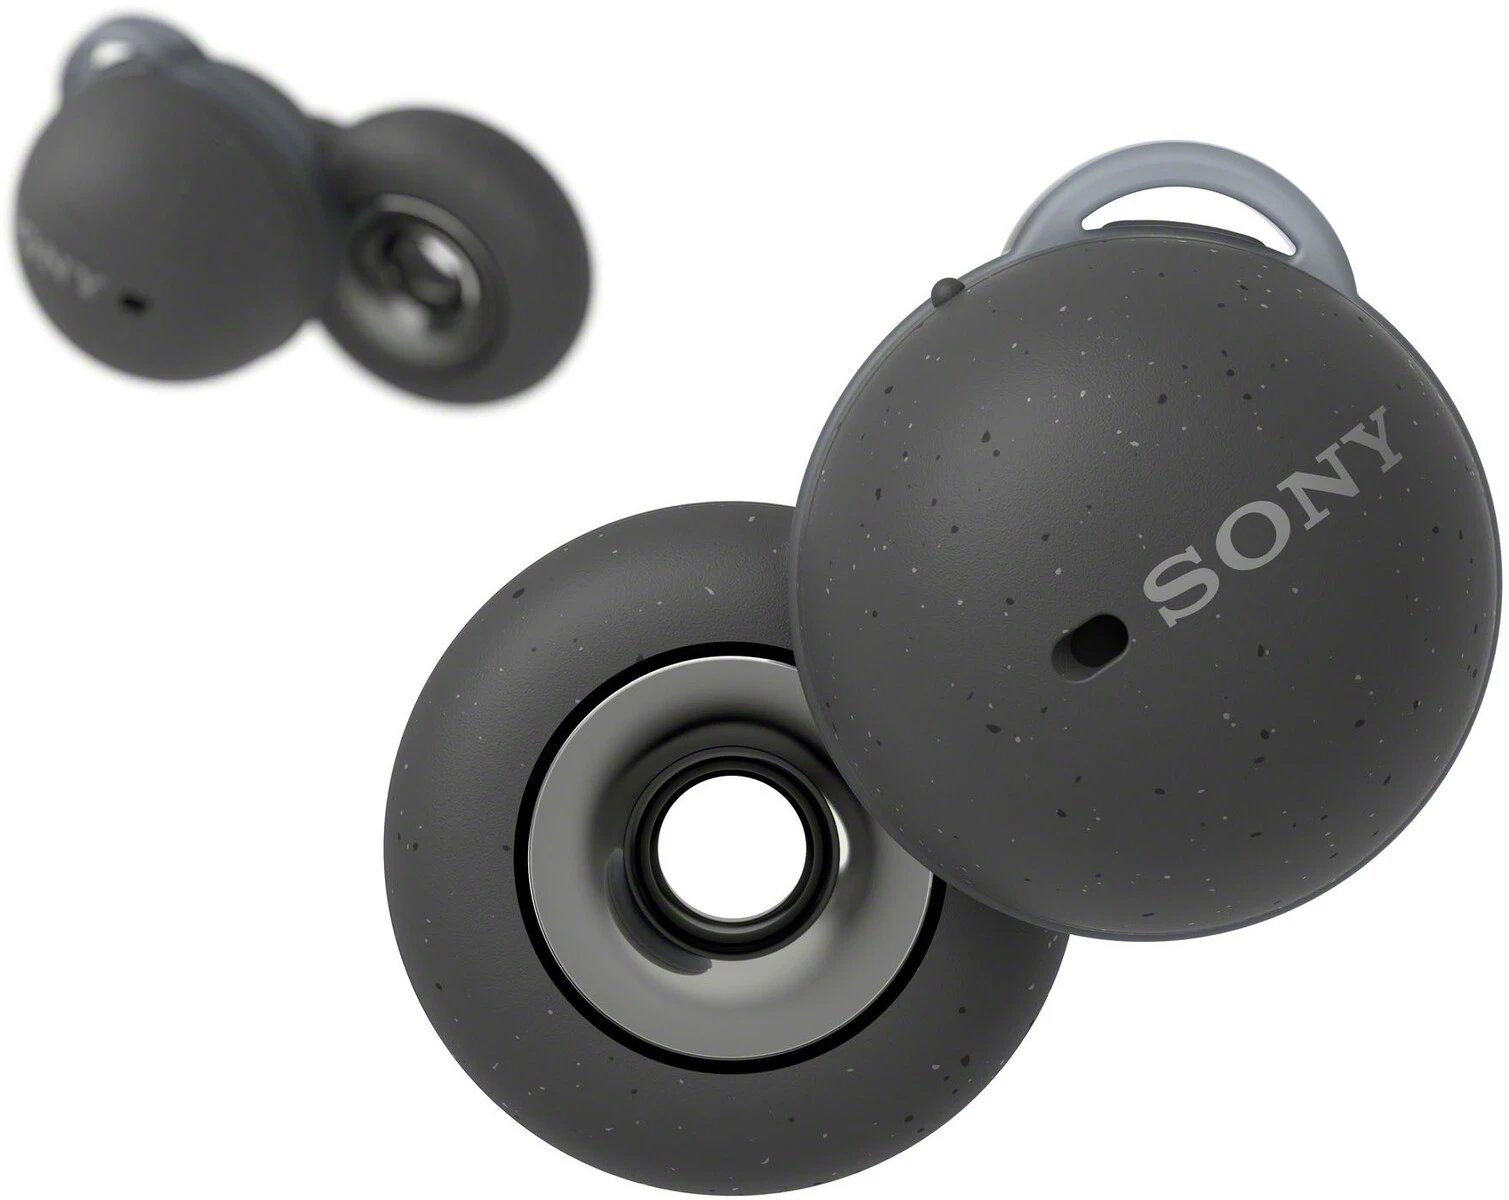 Sony'den sıra dışı tasarıma sahip kablosuz kulaklık geliyor